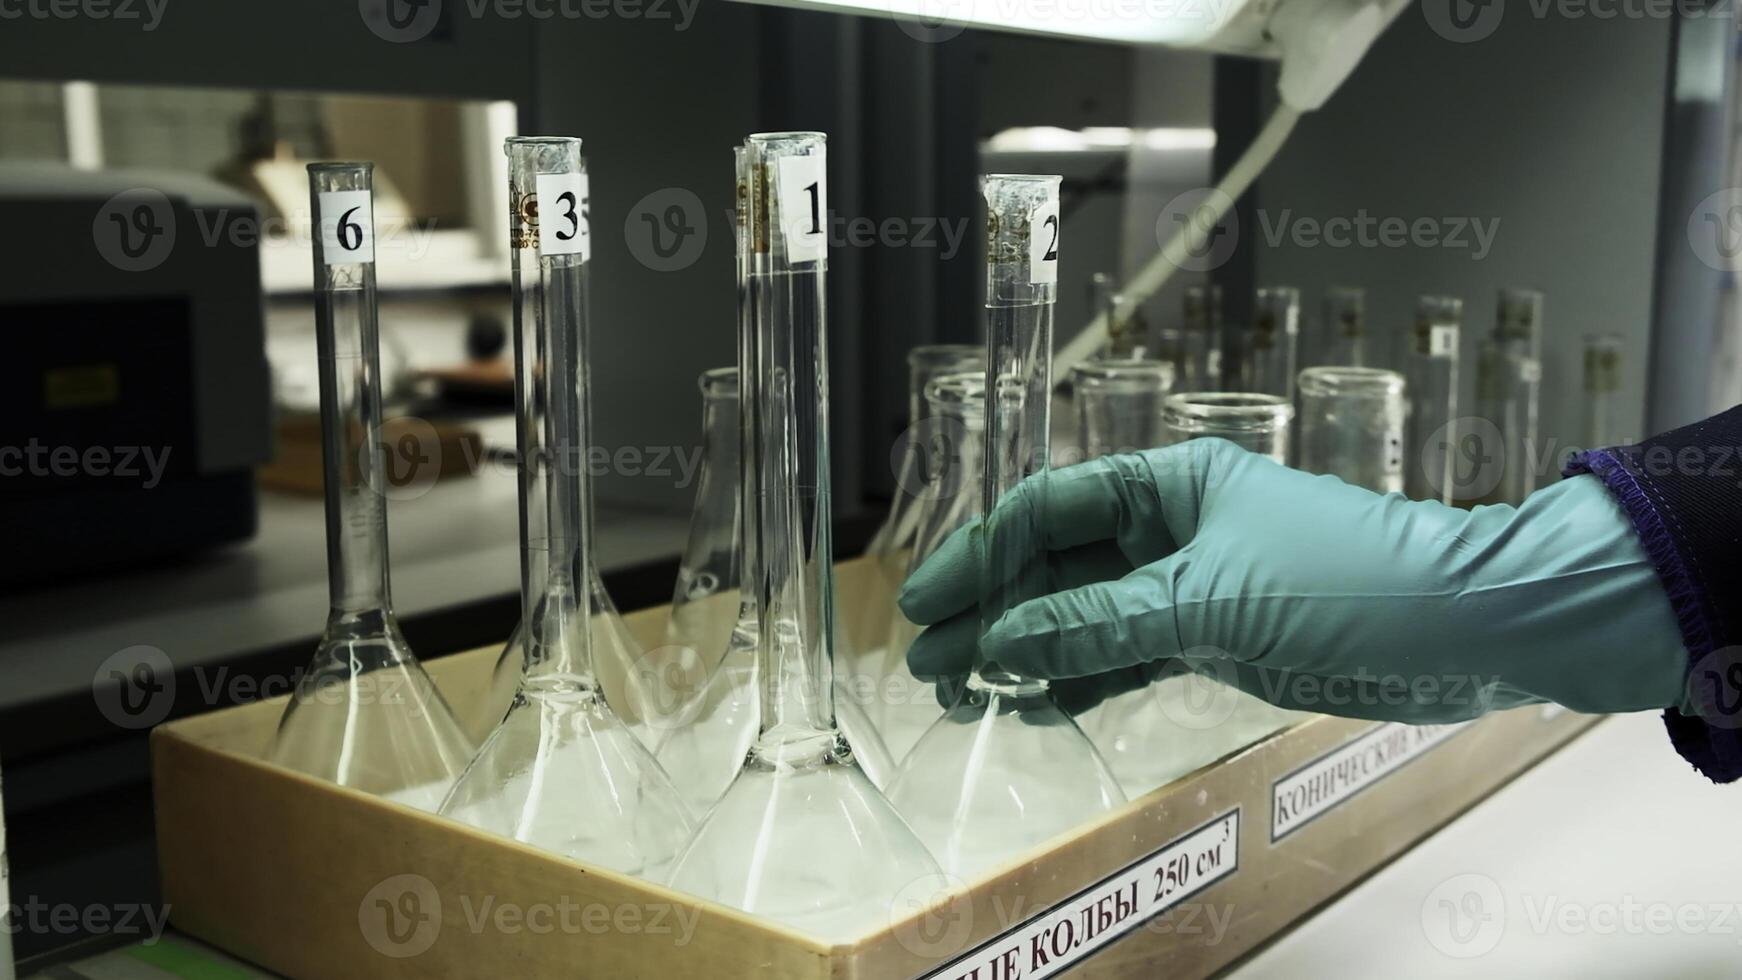 medicinsk forskning laboratorium Utrustning. klämma. en forskare händer i handskar tar en flaska, begrepp av forskning i kemi, biokemi och experiment. foto